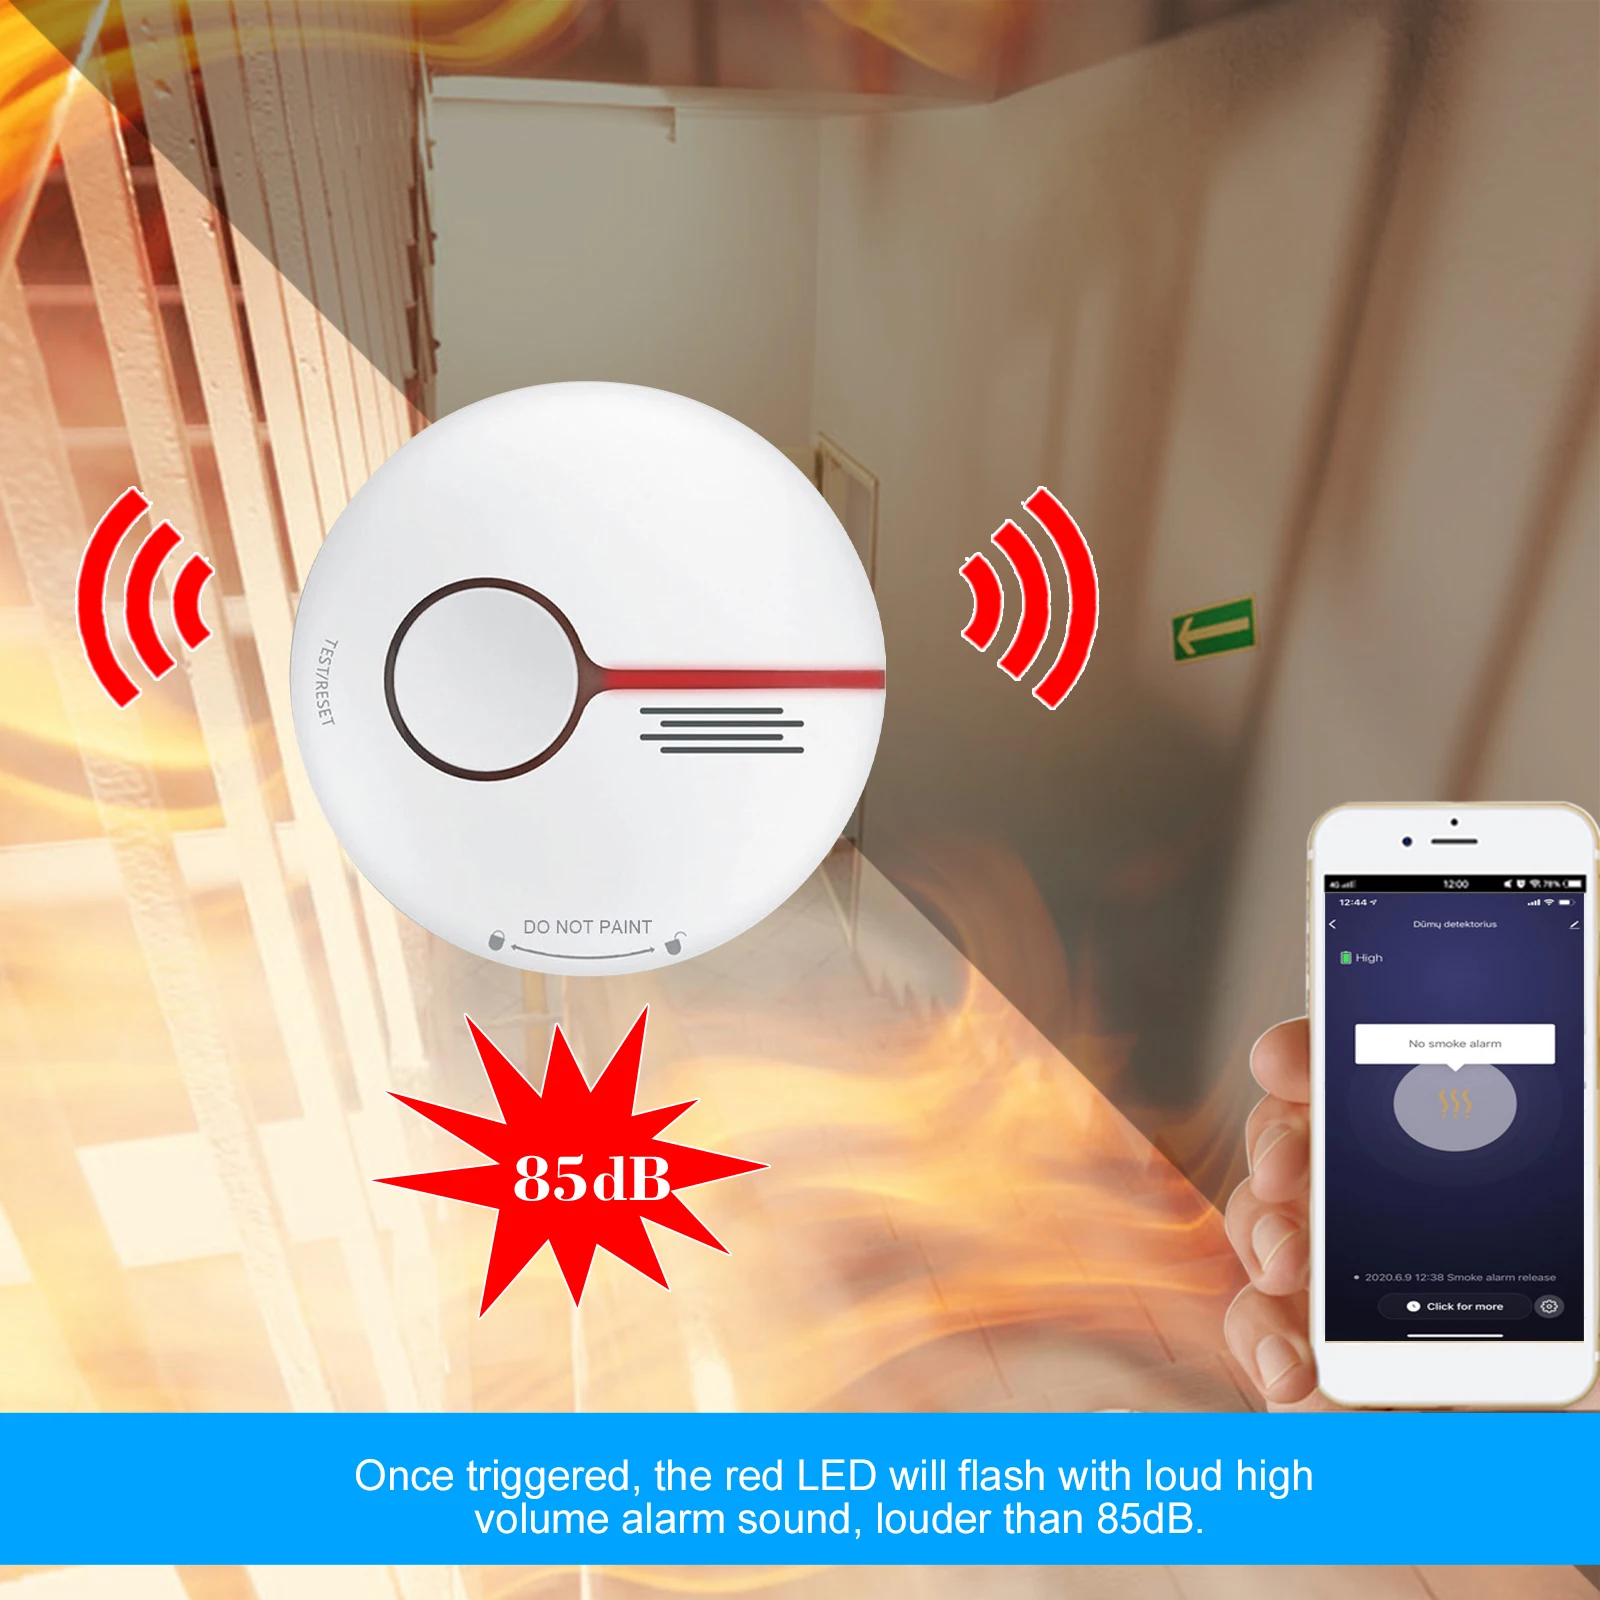 Détecteur de Fumée Connecté - Batterie de 10 Ans - Aroha Smart Connect  Alarme Incendie WiFi avec Smart Life & Tuya - 1 pièce : : Bricolage